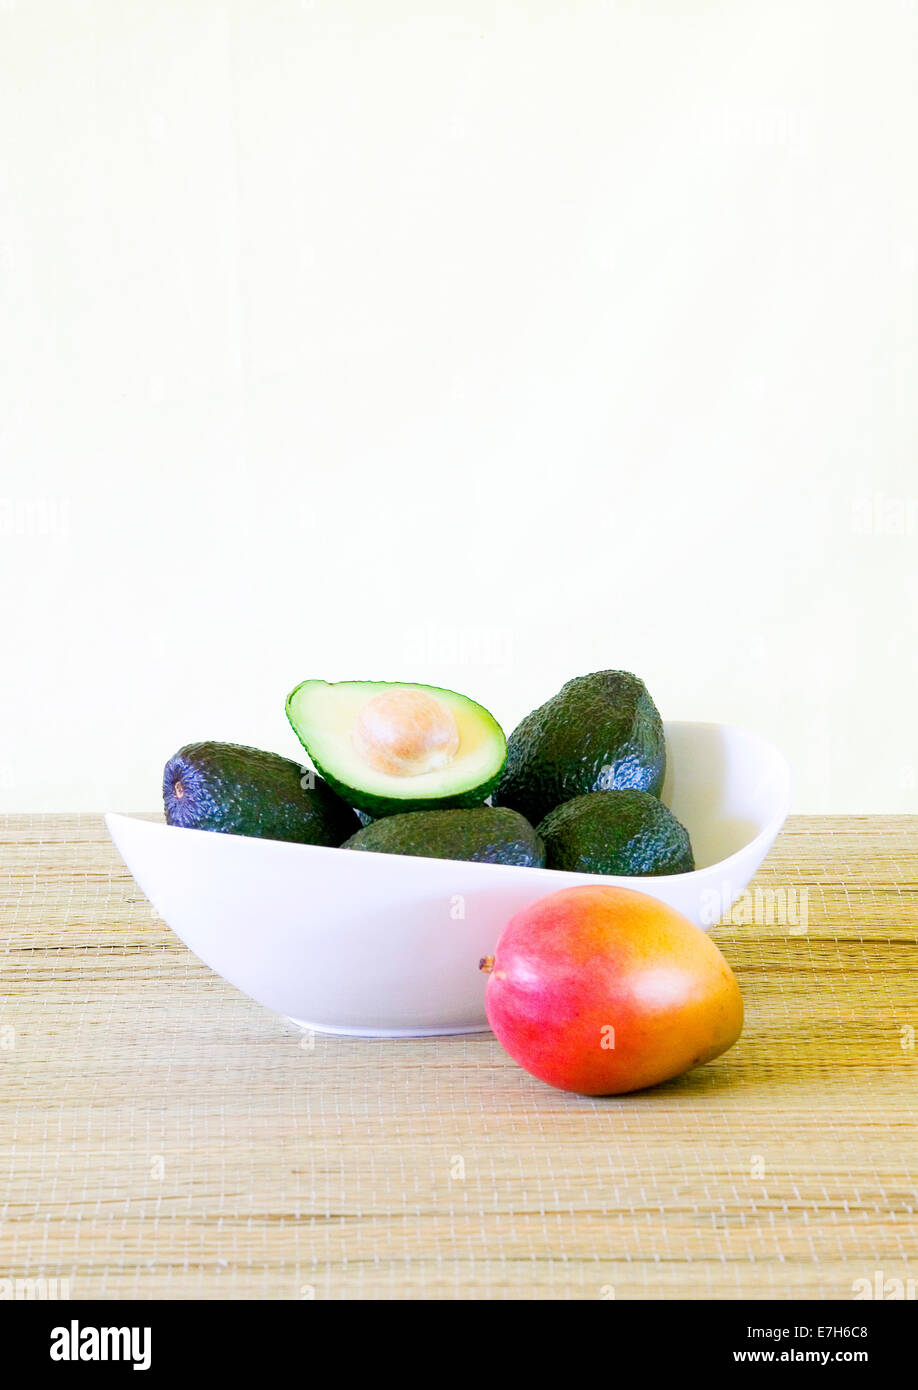 Avocados in a white bowl next to a mango. Stock Photo